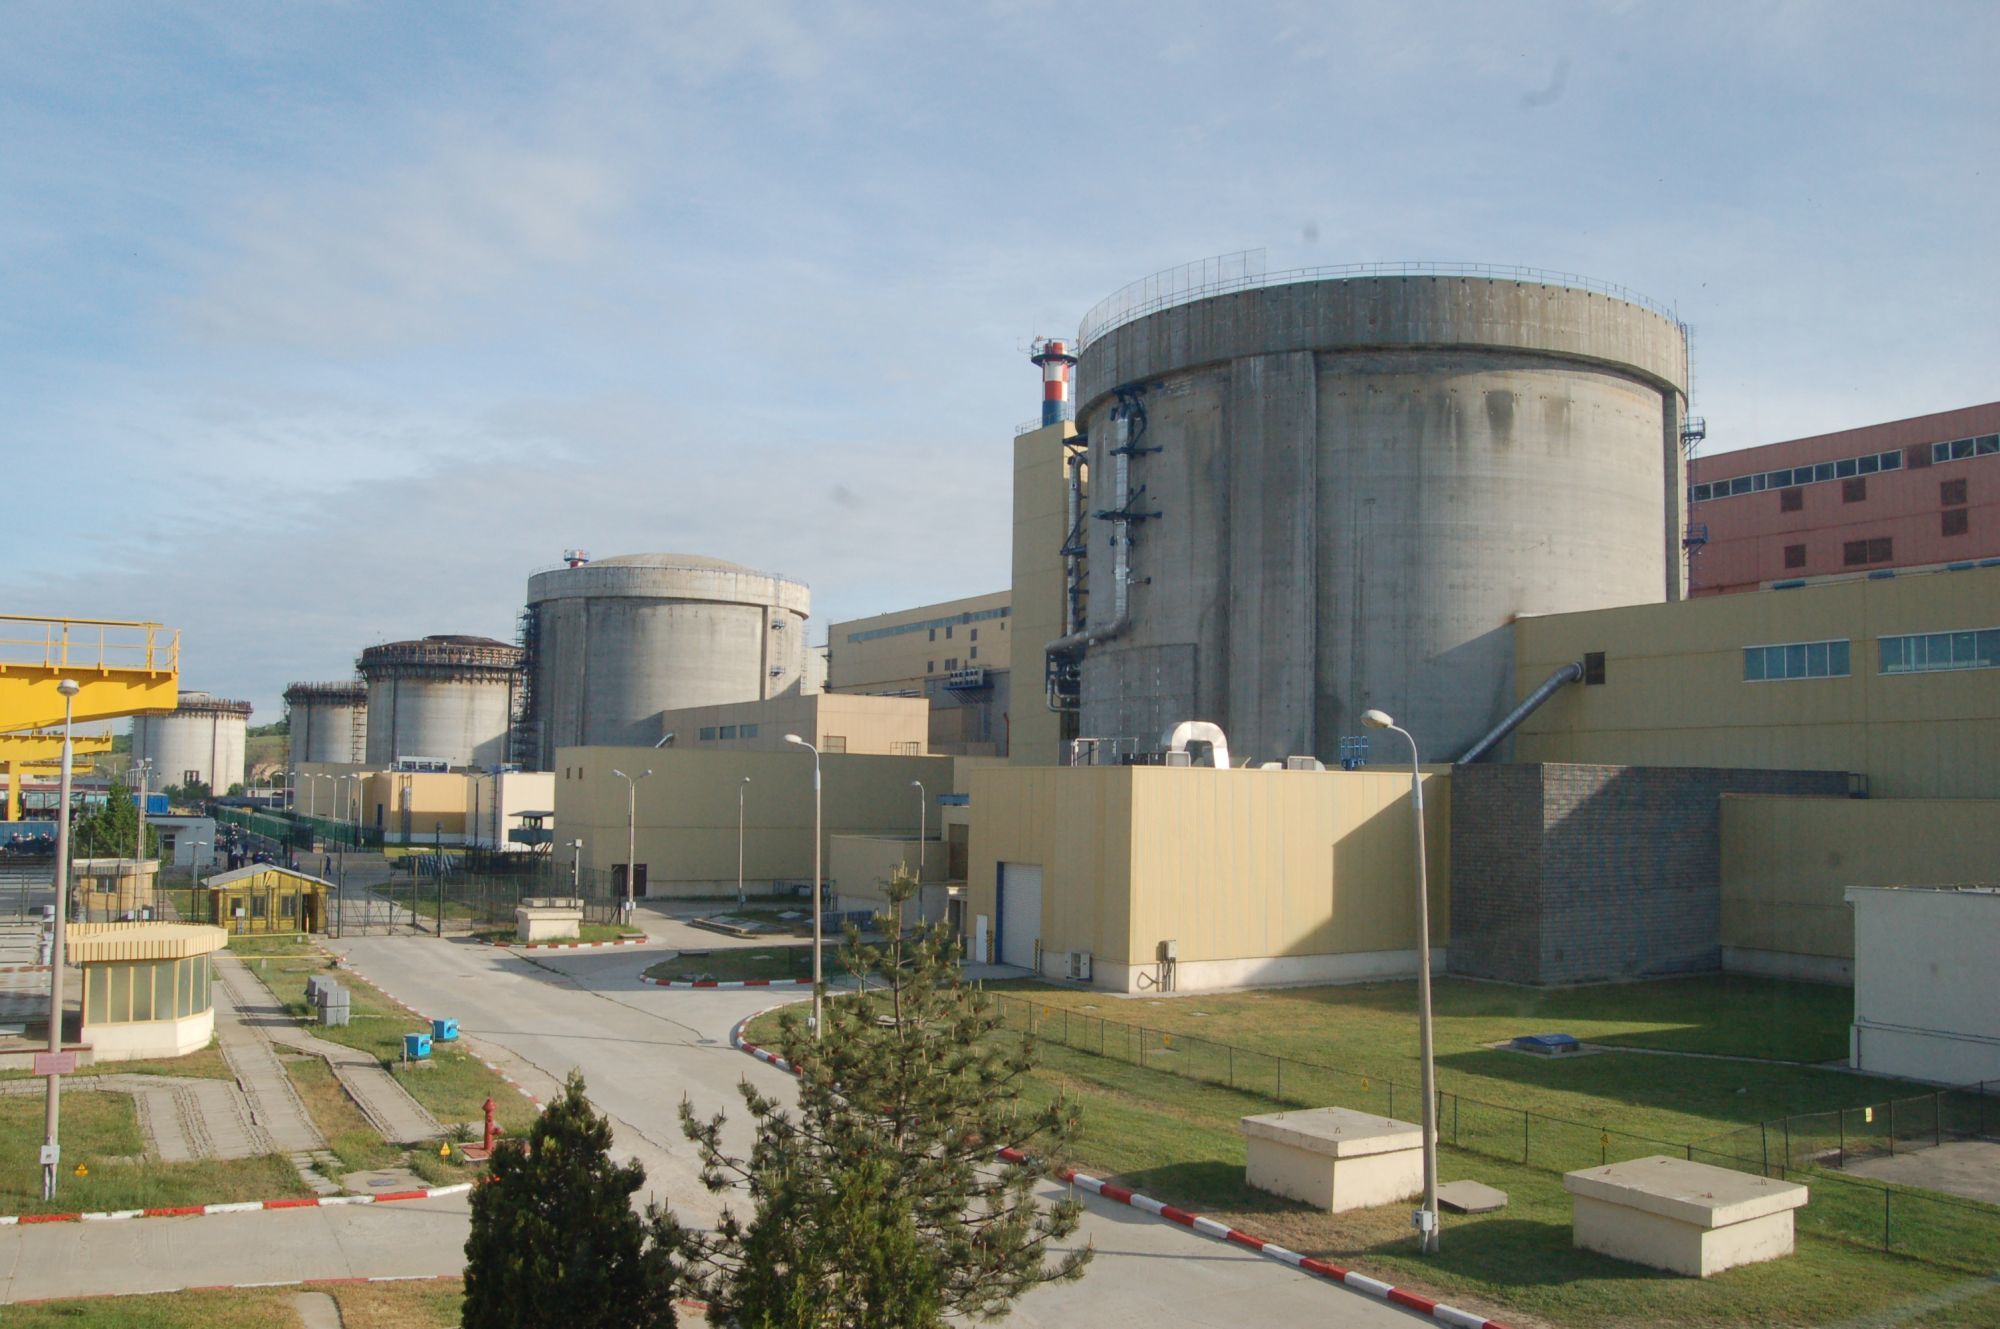 Nuclearelectrica finalizează operaţionalizarea Filialei Feldioara. Au fost întreprinse toate demersurile necesare pentru transportul concentratului tehnic de uraniu din Kazakstan, pentru a asigura începerea producţiei odată cu operationalizarea filialei